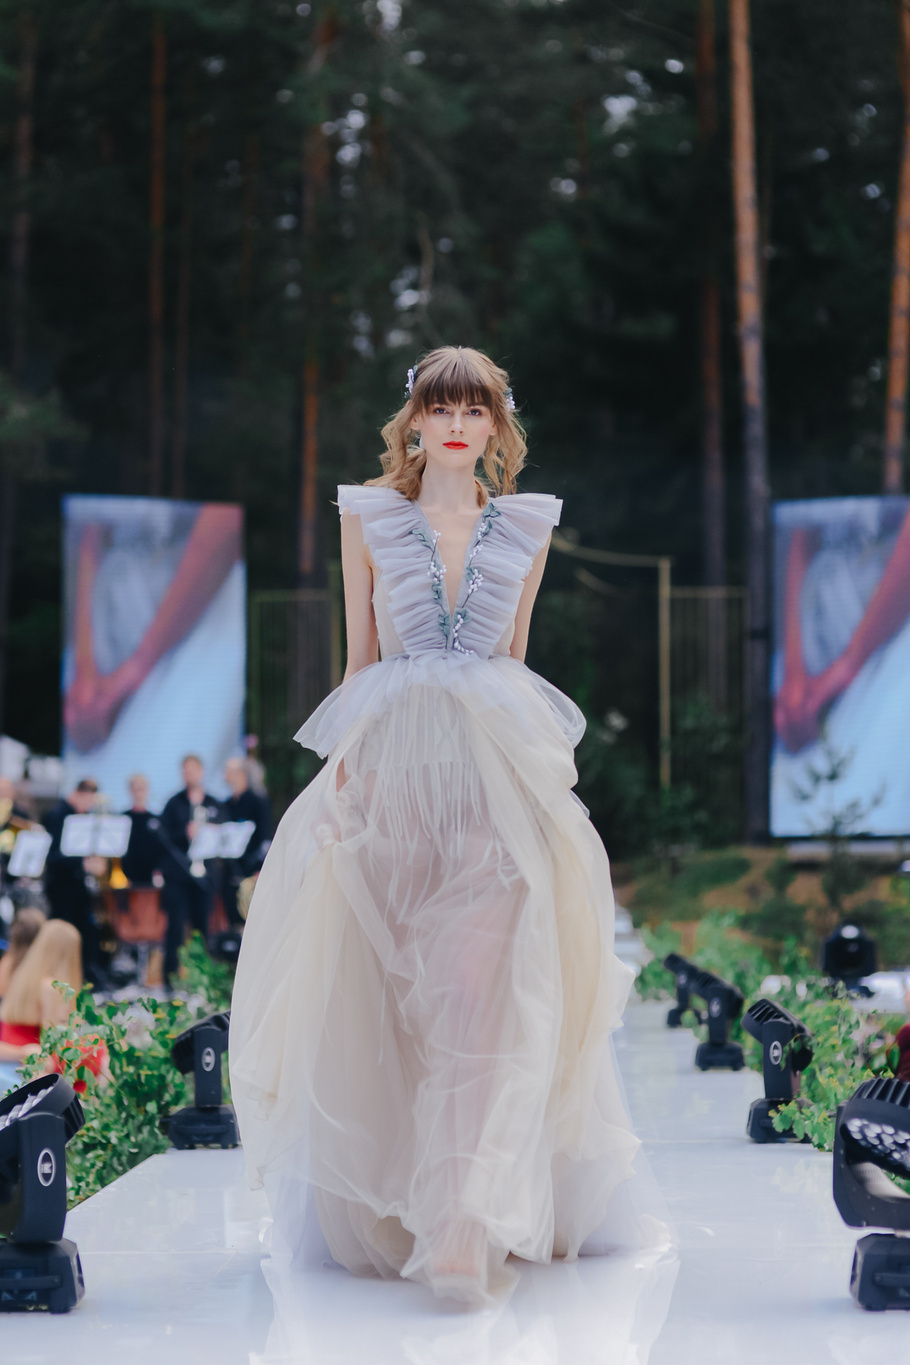 Купить свадебное платье «Тиса» Рара Авис из коллекции Флорал Парадайз 2018 года в салоне свадебных платьев